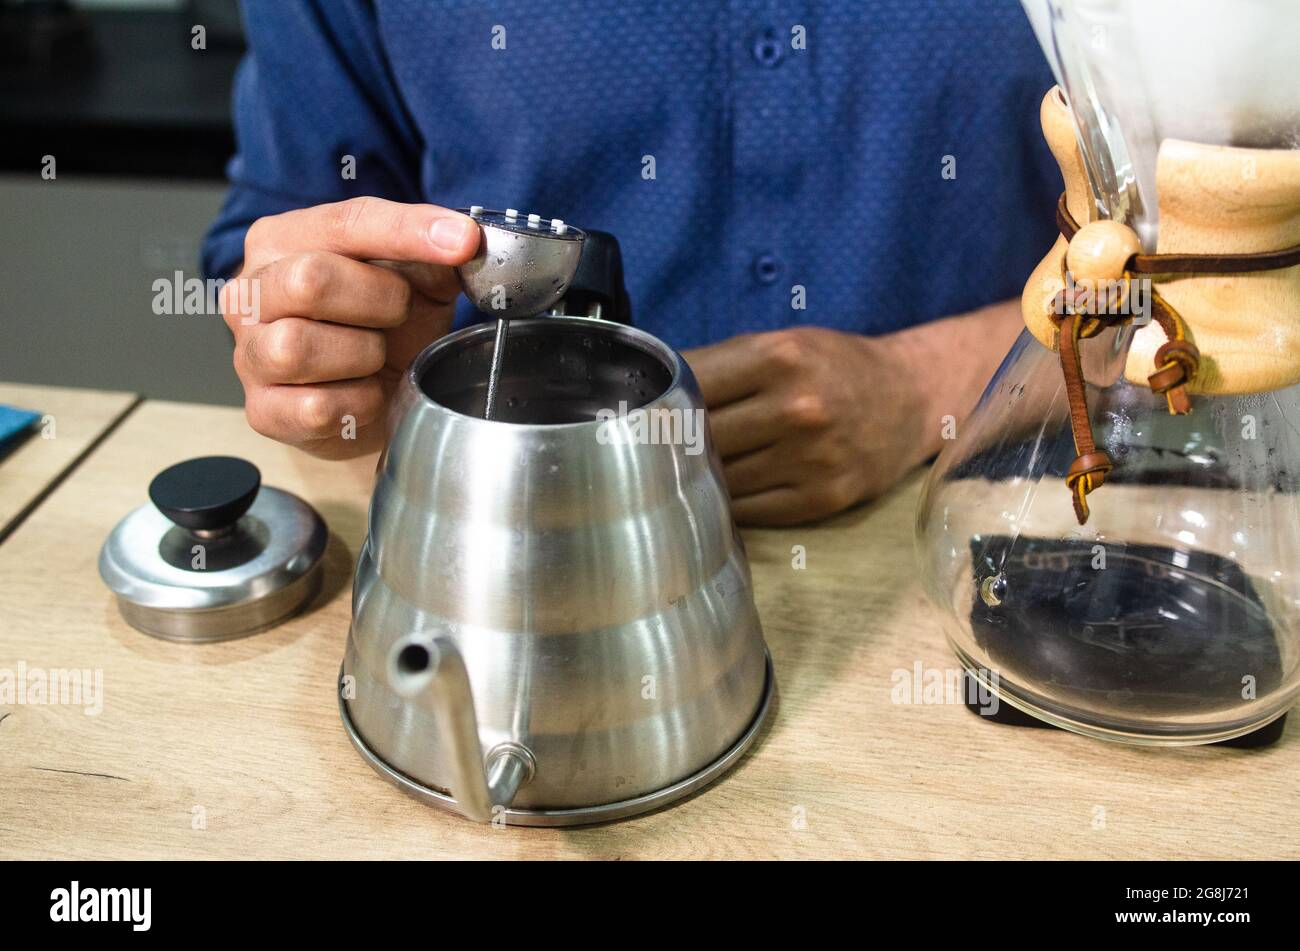 Preparazione del caffè con chemex in vetro nella caffetteria. La macchina da caffè Chemex è un dispositivo per preparare il caffè come bevanda calda di origine tedesca. Foto Stock